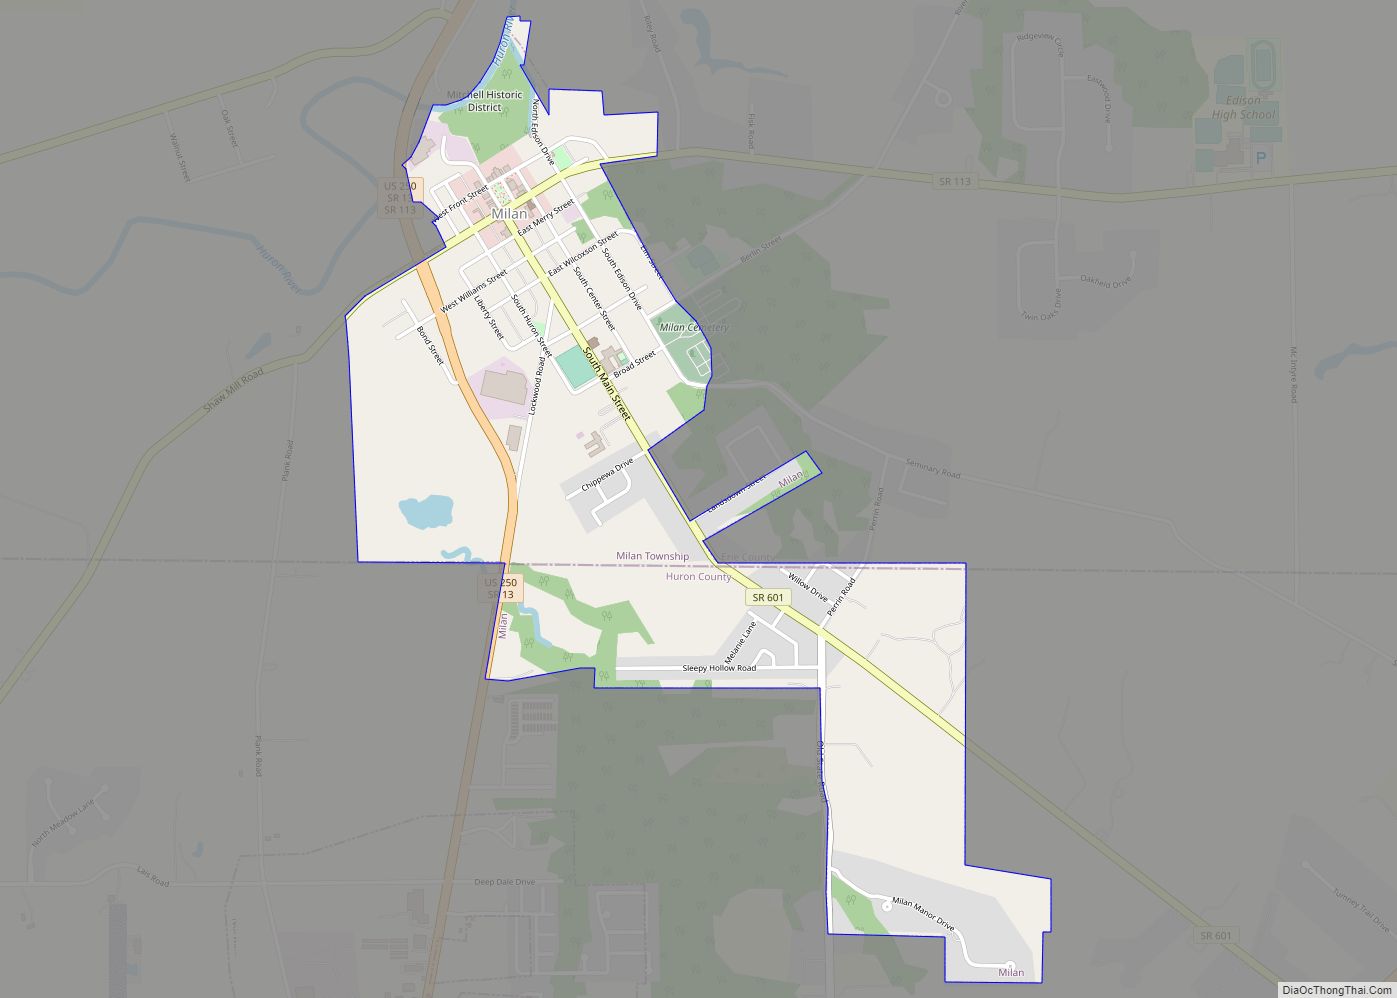 Map of Milan village, Ohio